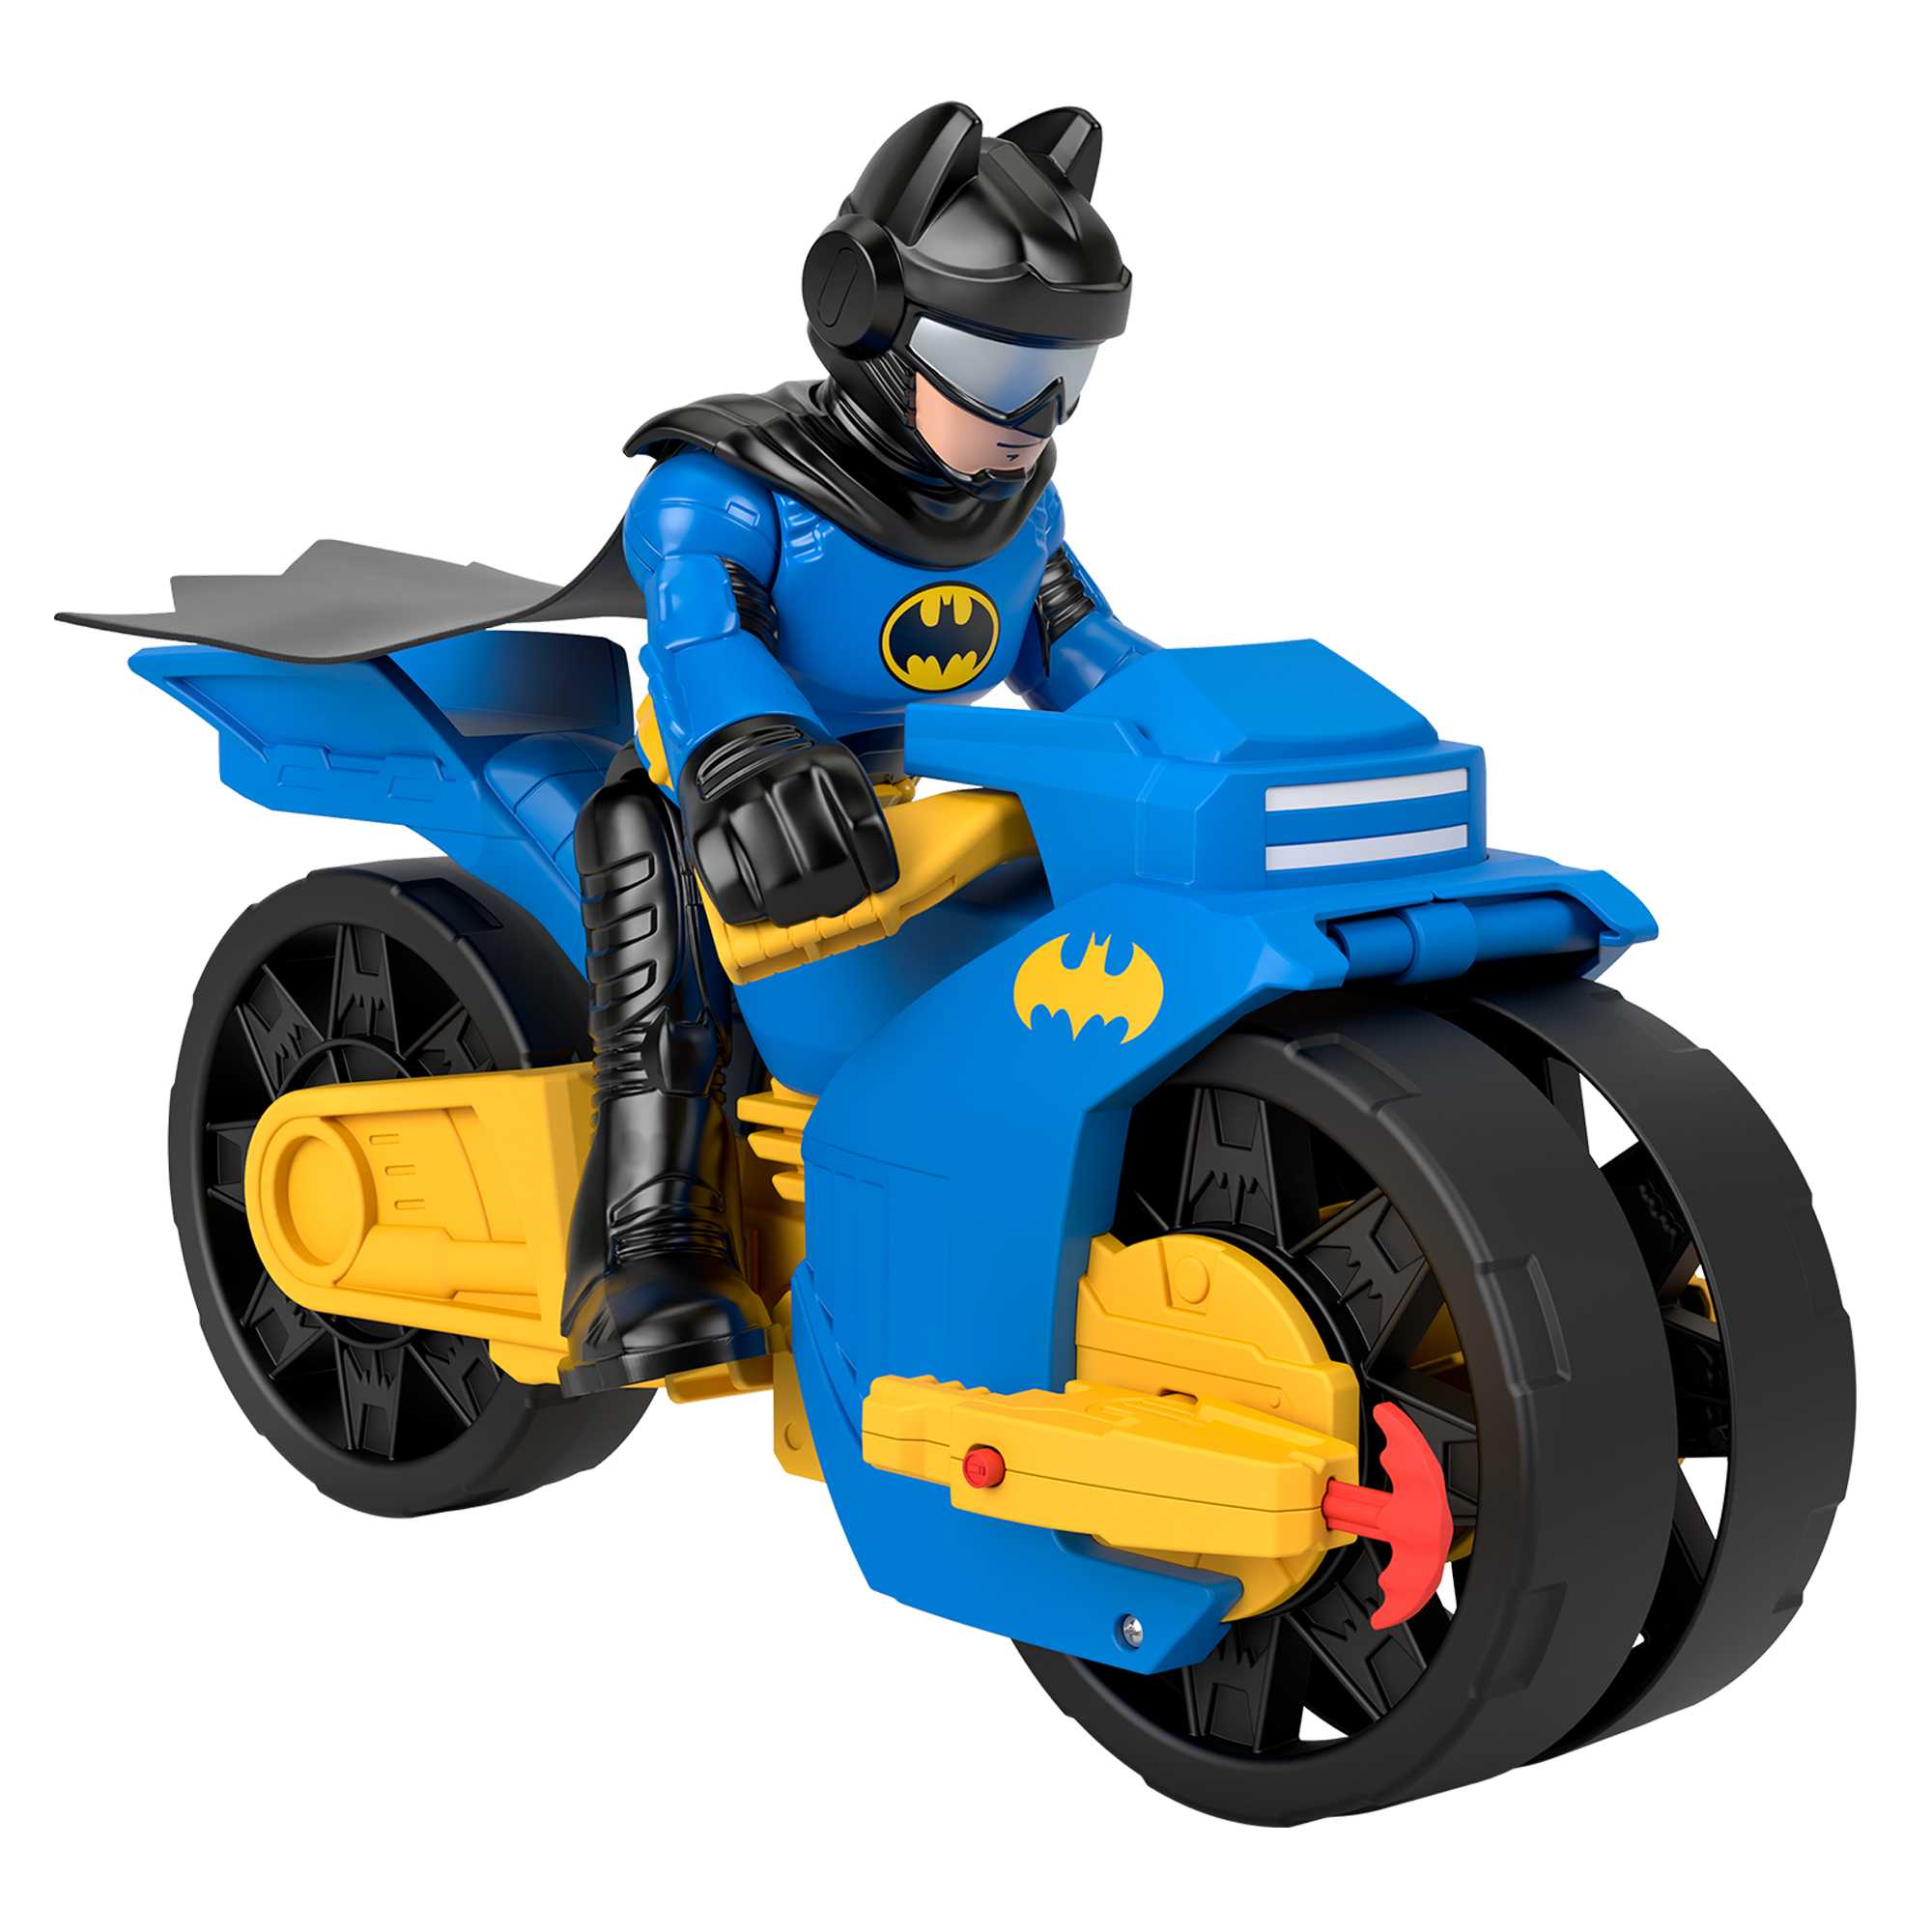 Imaginext DC Super Friends Batcycle XL & Batman Toys |Mattel